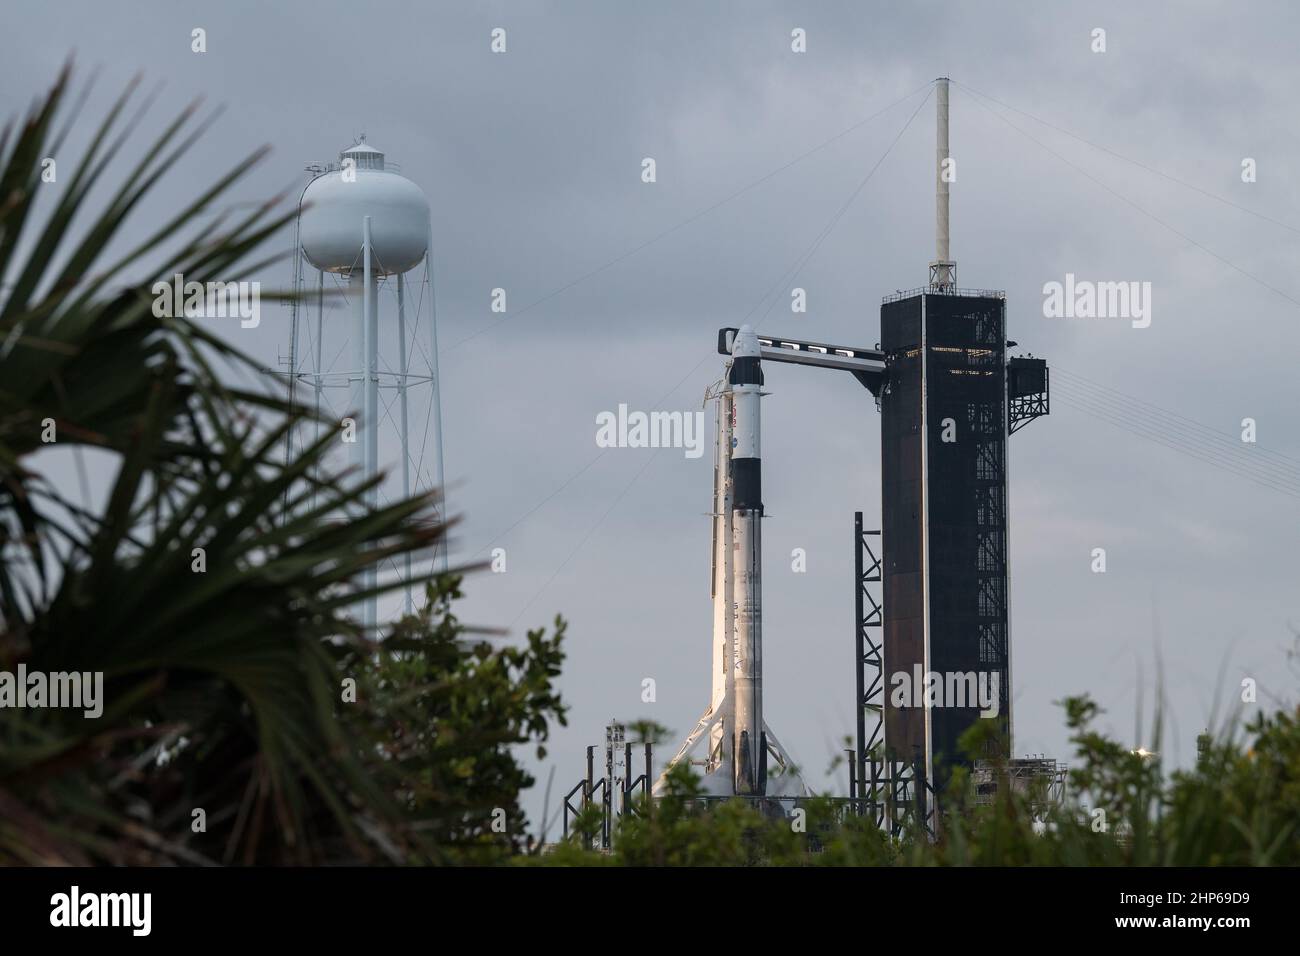 Un cohete SpaceX Falcon 9 con la nave espacial Crew Dragon de la compañía a bordo se ve en el panel de lanzamiento del Complejo de Lanzamiento 39A mientras continúan los preparativos para la misión Crew-2, el miércoles 21 de abril de 2021, en el Centro Espacial Kennedy de la NASA en Florida. La misión SpaceX Crew-2 de la NASA es la segunda misión de rotación de la tripulación de la nave espacial SpaceX Crew Dragon y del cohete Falcon 9 a la Estación Espacial Internacional como parte del Programa de Crew Comercial de la agencia. Foto de stock